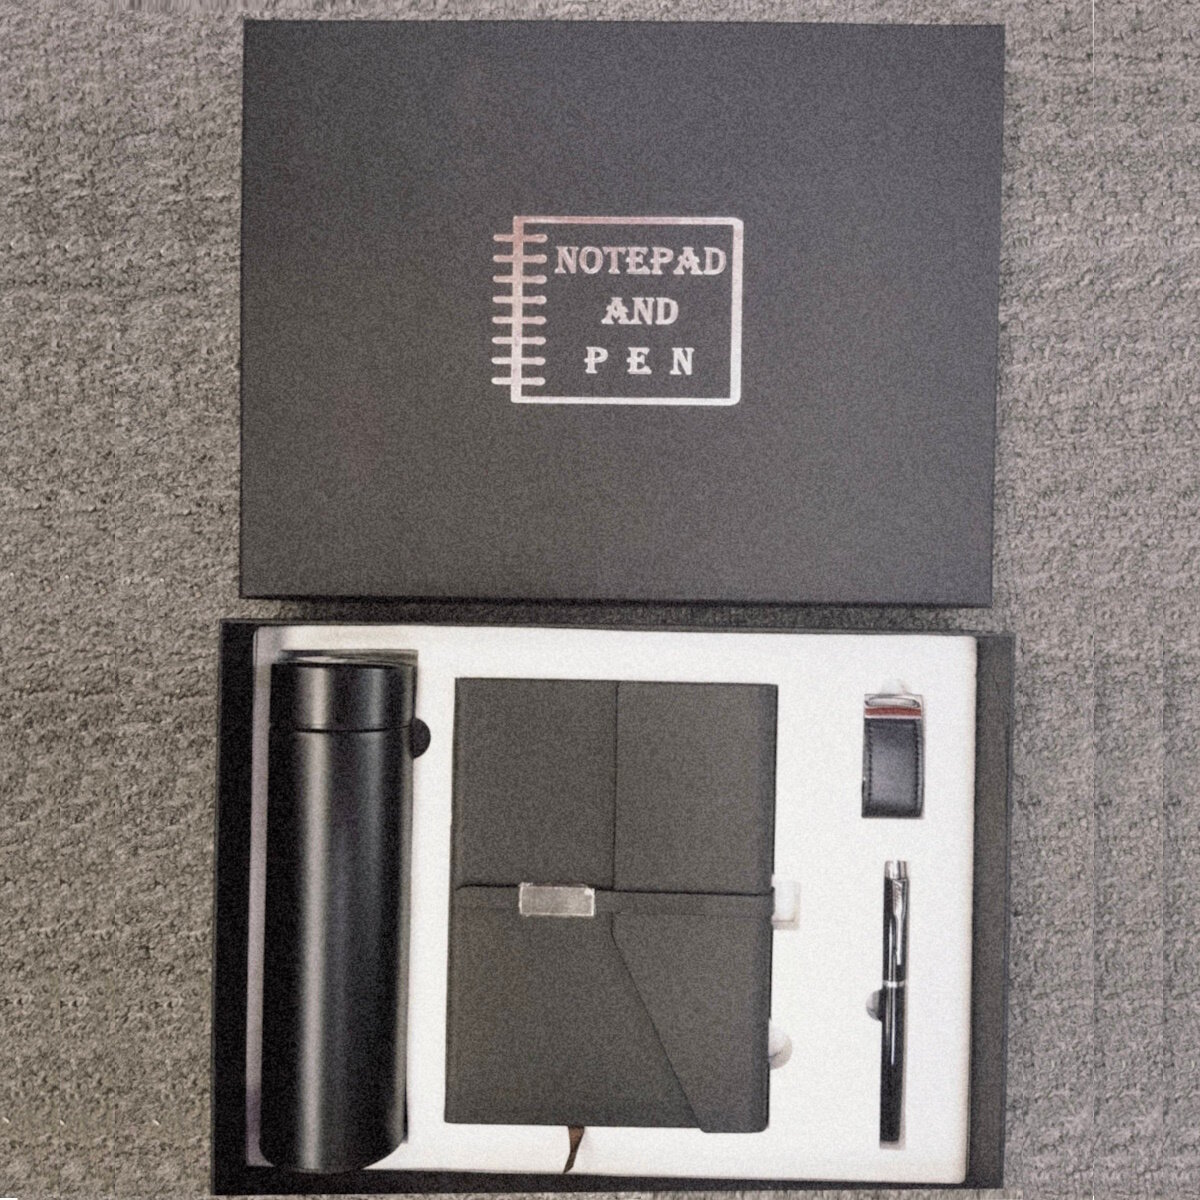 Подарочный набор: термос + ежедневник + флэшка + ручка, черный цвет